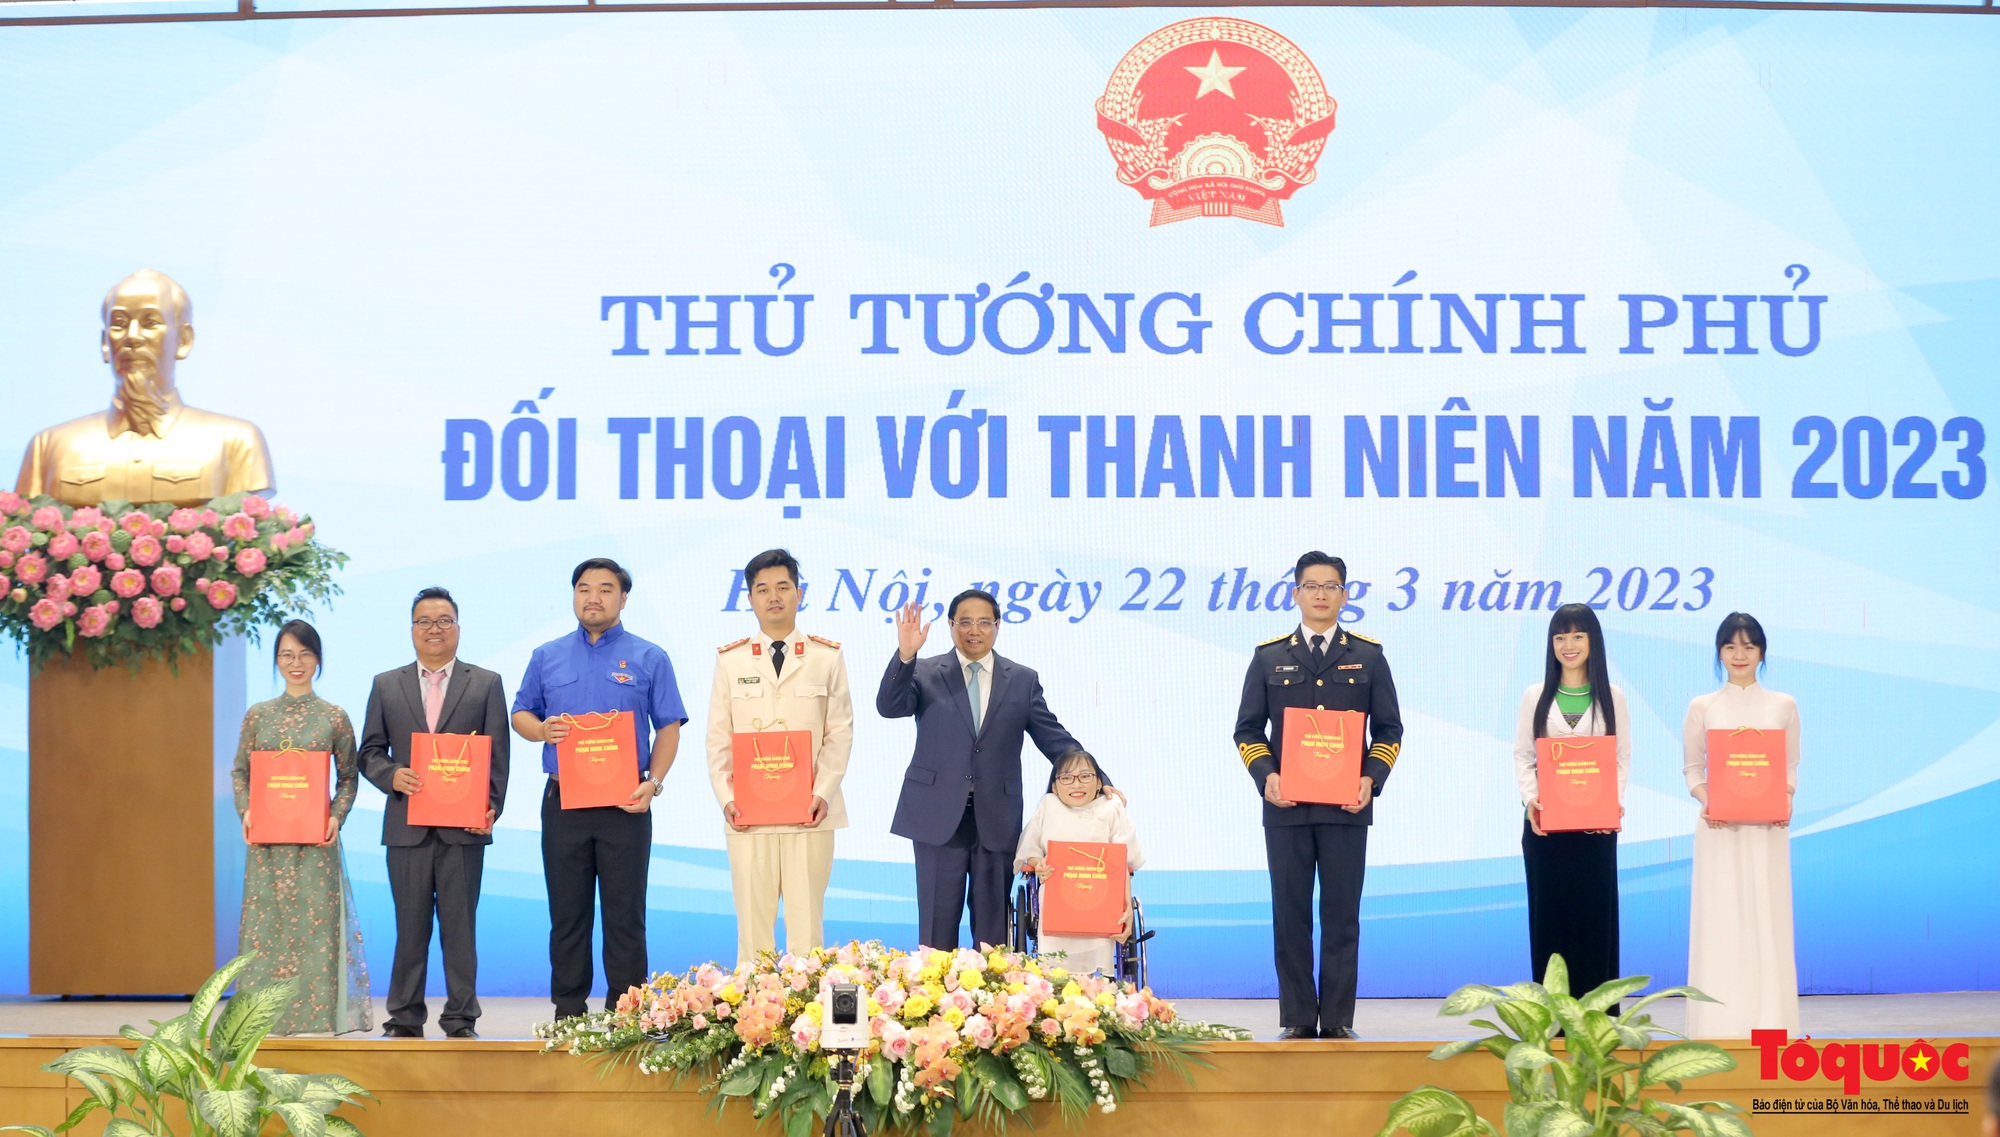 Chùm ảnh: Thủ tướng Chính phủ Phạm Minh Chính đối thoại với thanh niên Việt Nam - Ảnh 7.